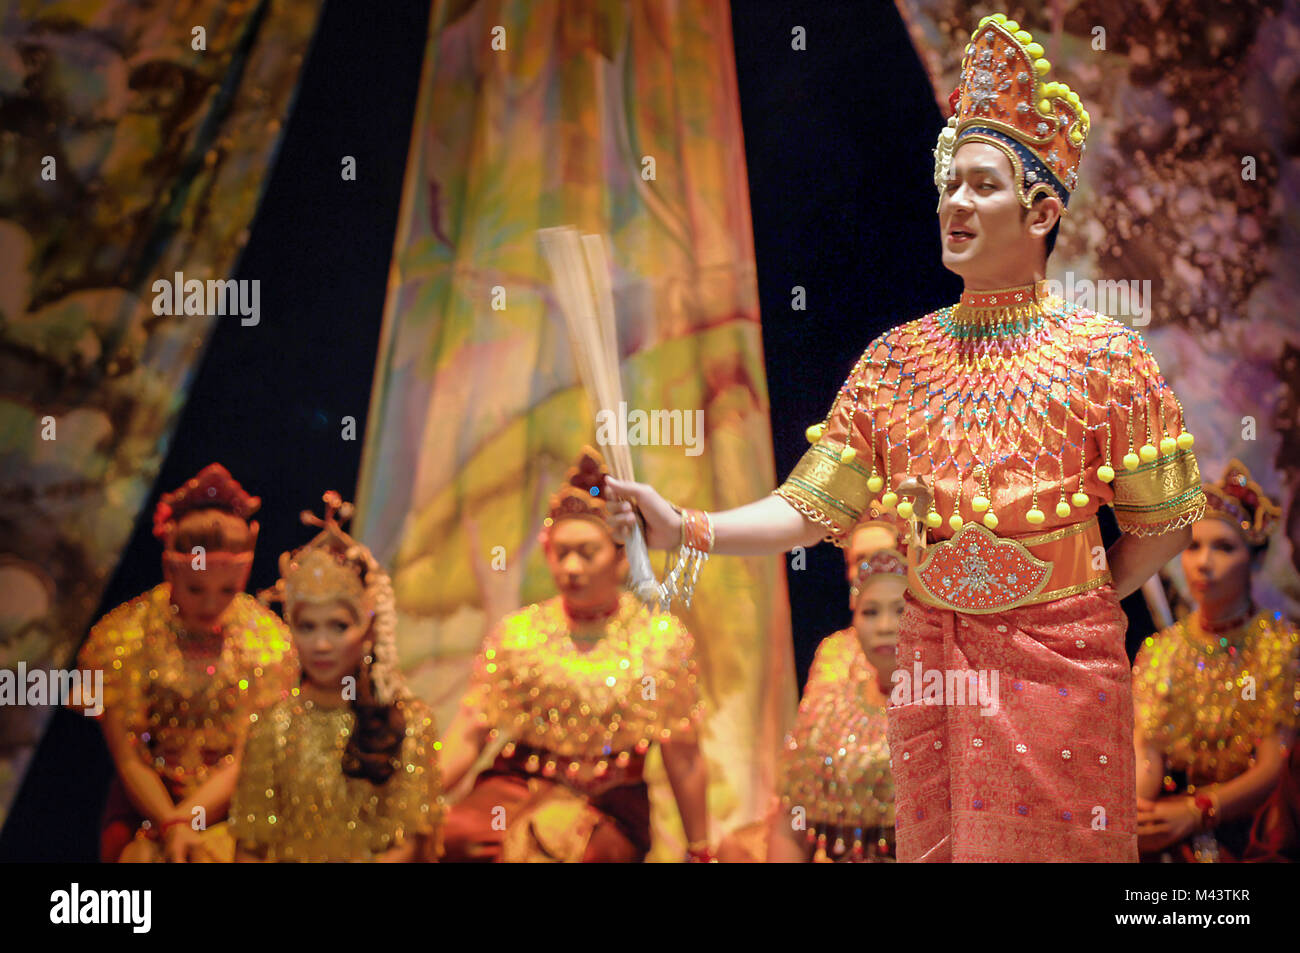 Mak Mak yong ou yung est une forme traditionnelle de la danse-théâtre du nord de la Malaisie, en particulier l'état de Kelantan Banque D'Images